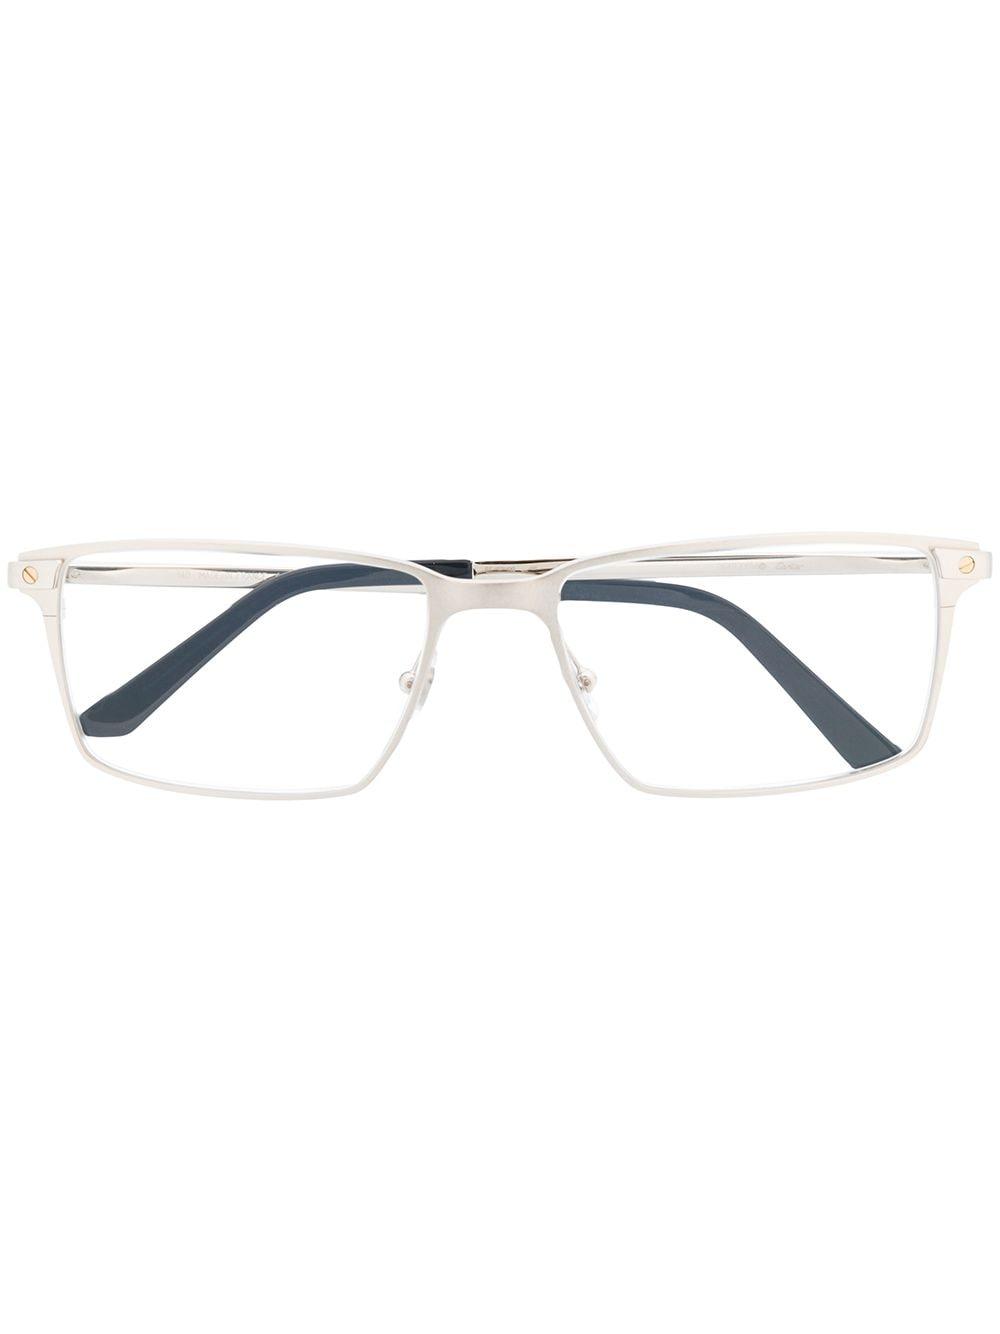 cartier santos eyeglass frames